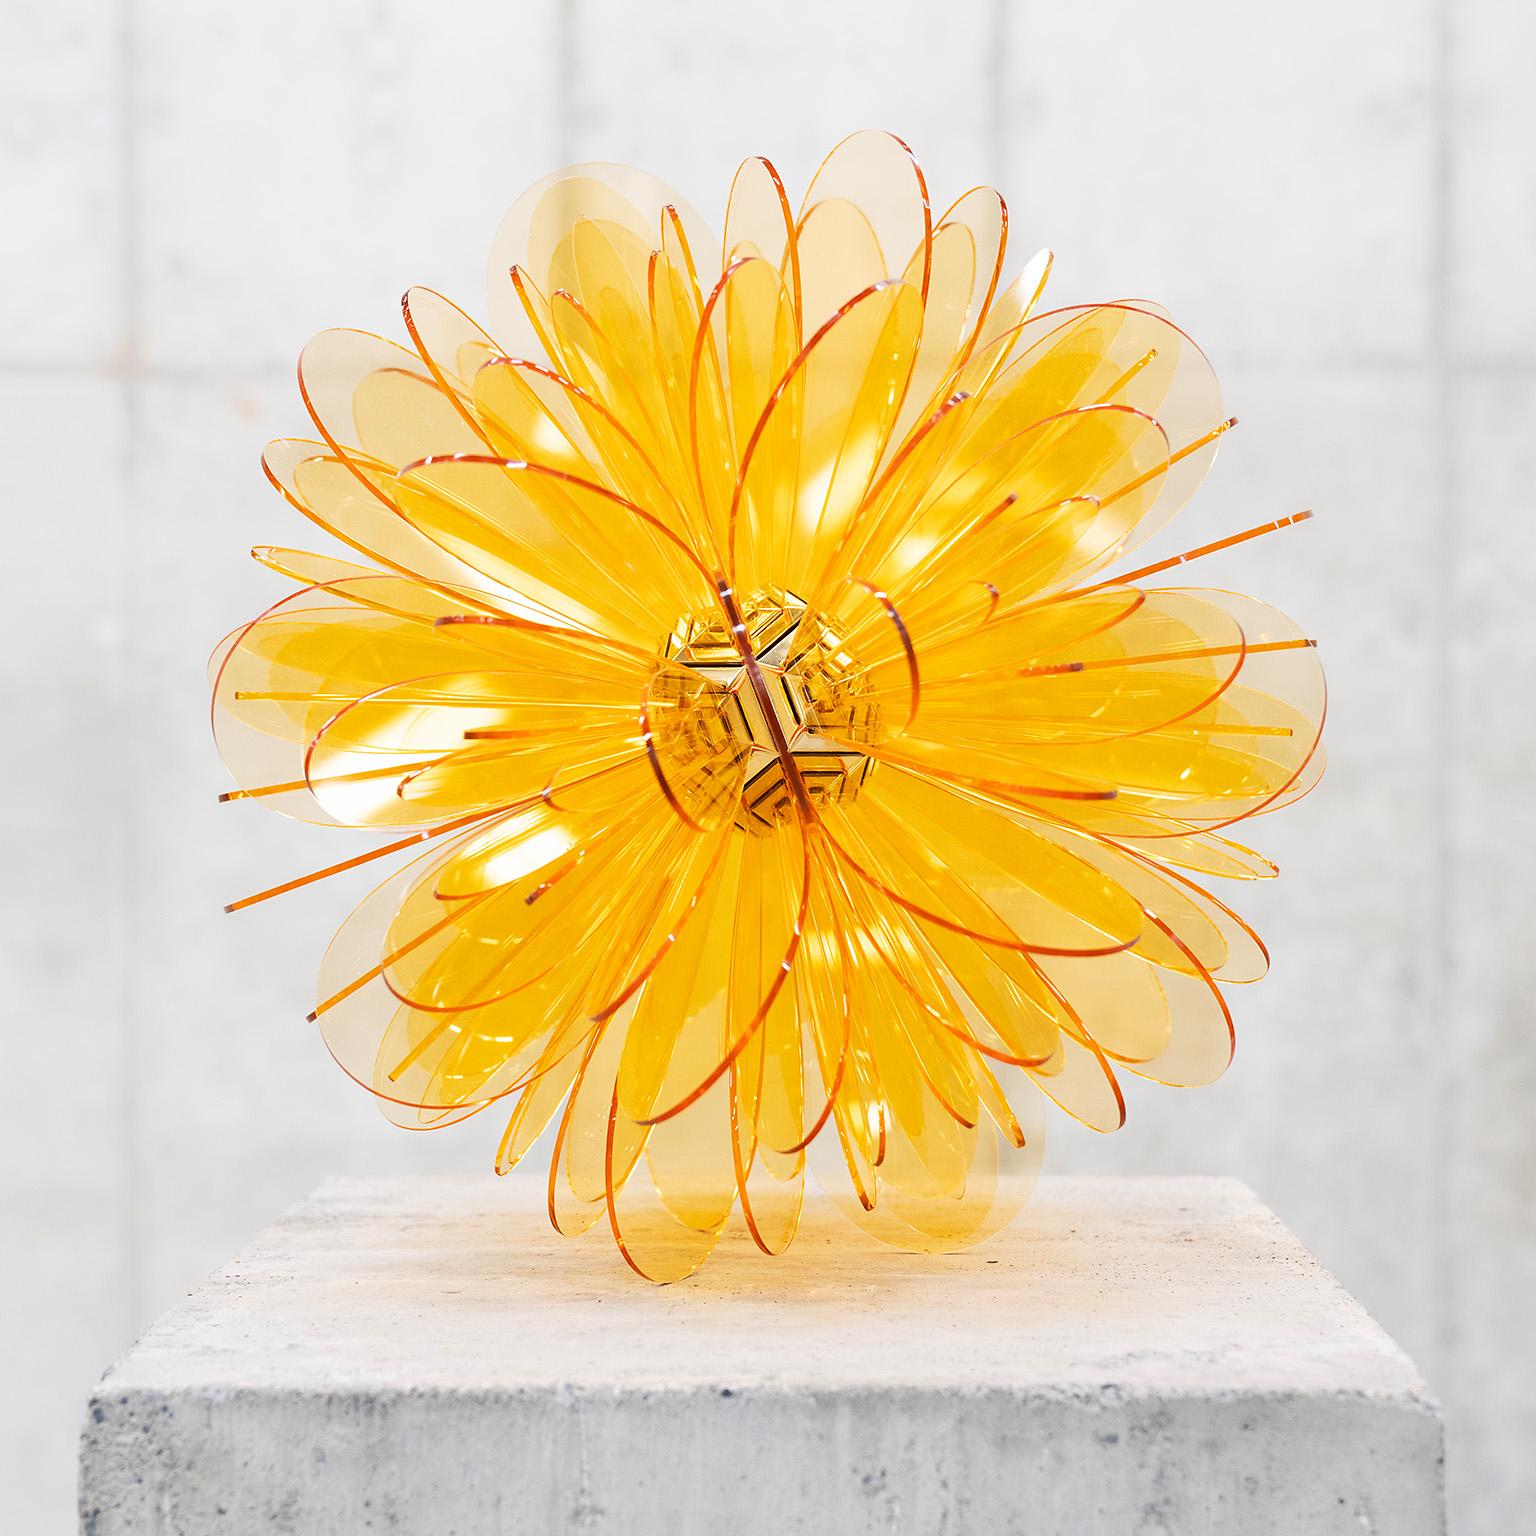 Abstract Sculpture Norman Mooney - « Bloom n° 8 » de la série Bloom, sculpture abstraite, organique, acrylique jaune